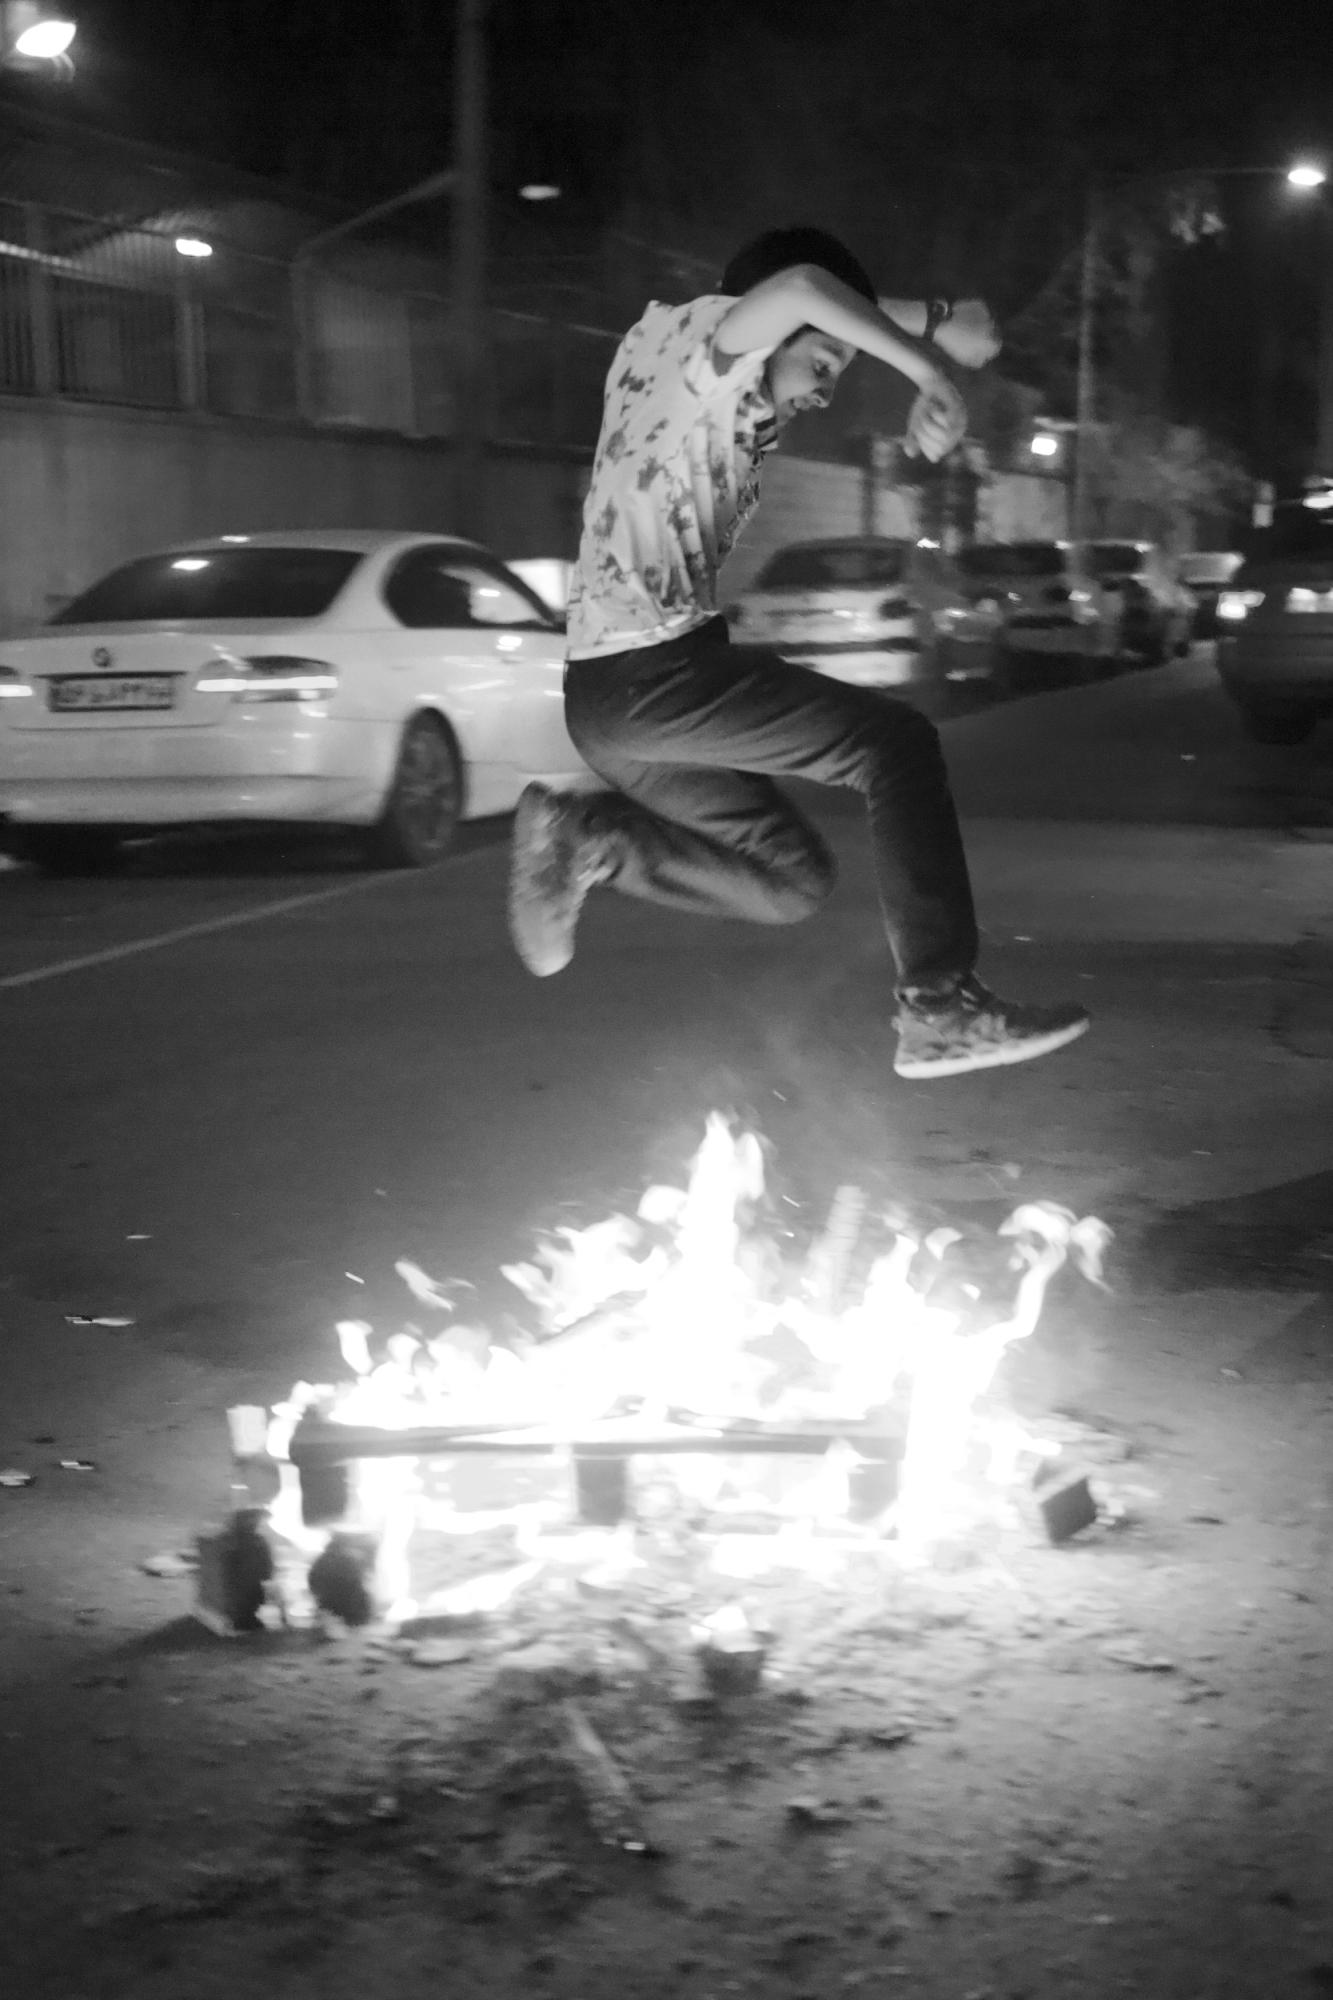 Iraniyat ("being Iranian") -    An Iranian boy celebrates the fire festival of...